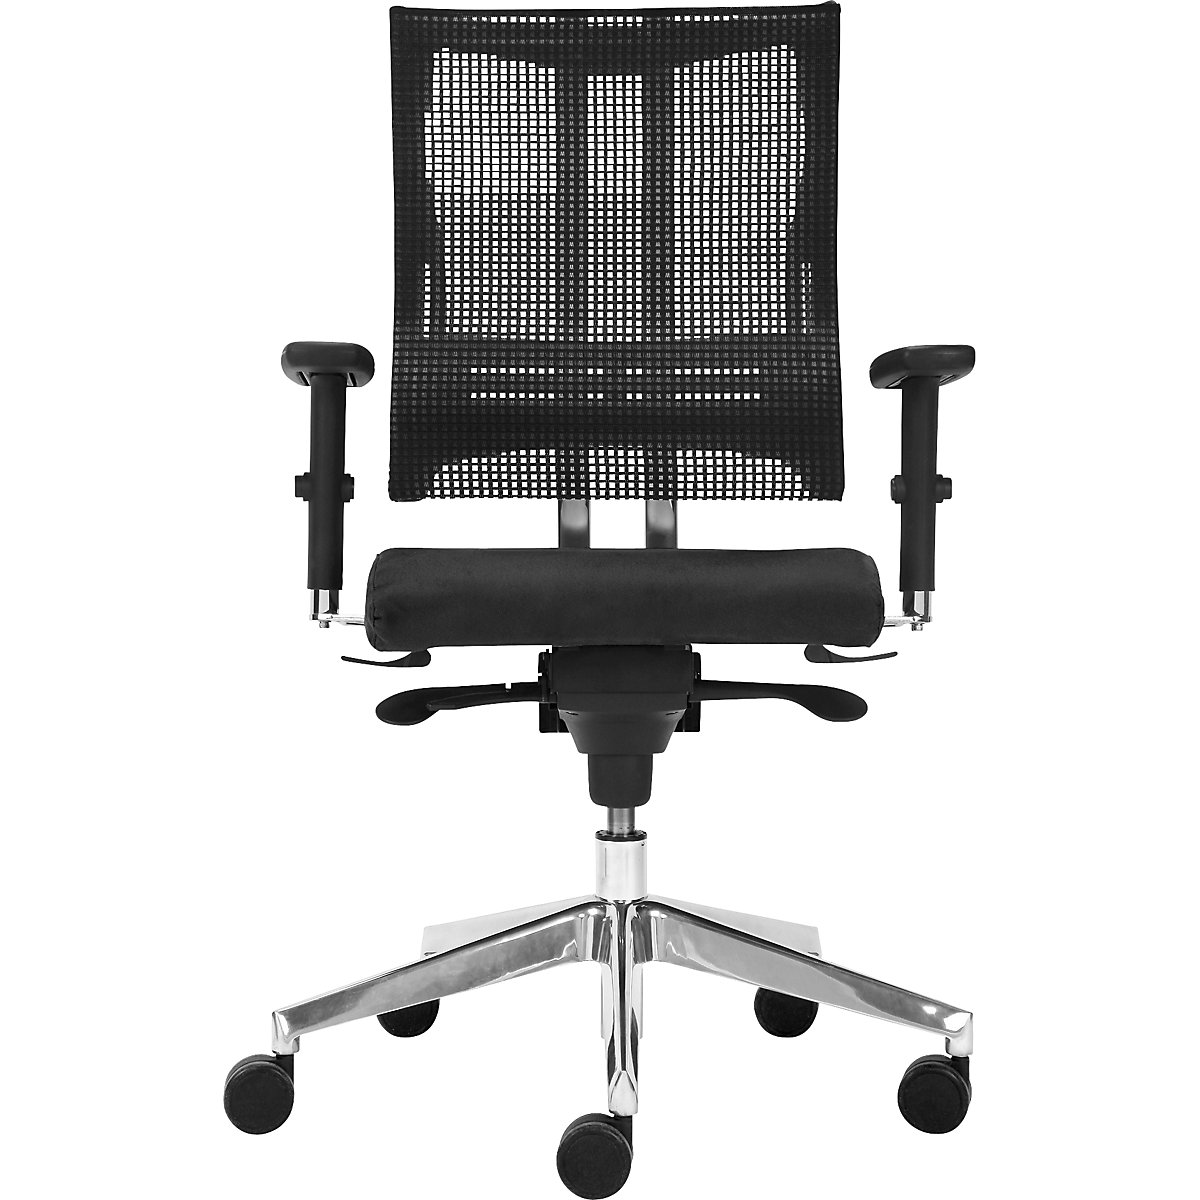 NET-MOTION office swivel chair